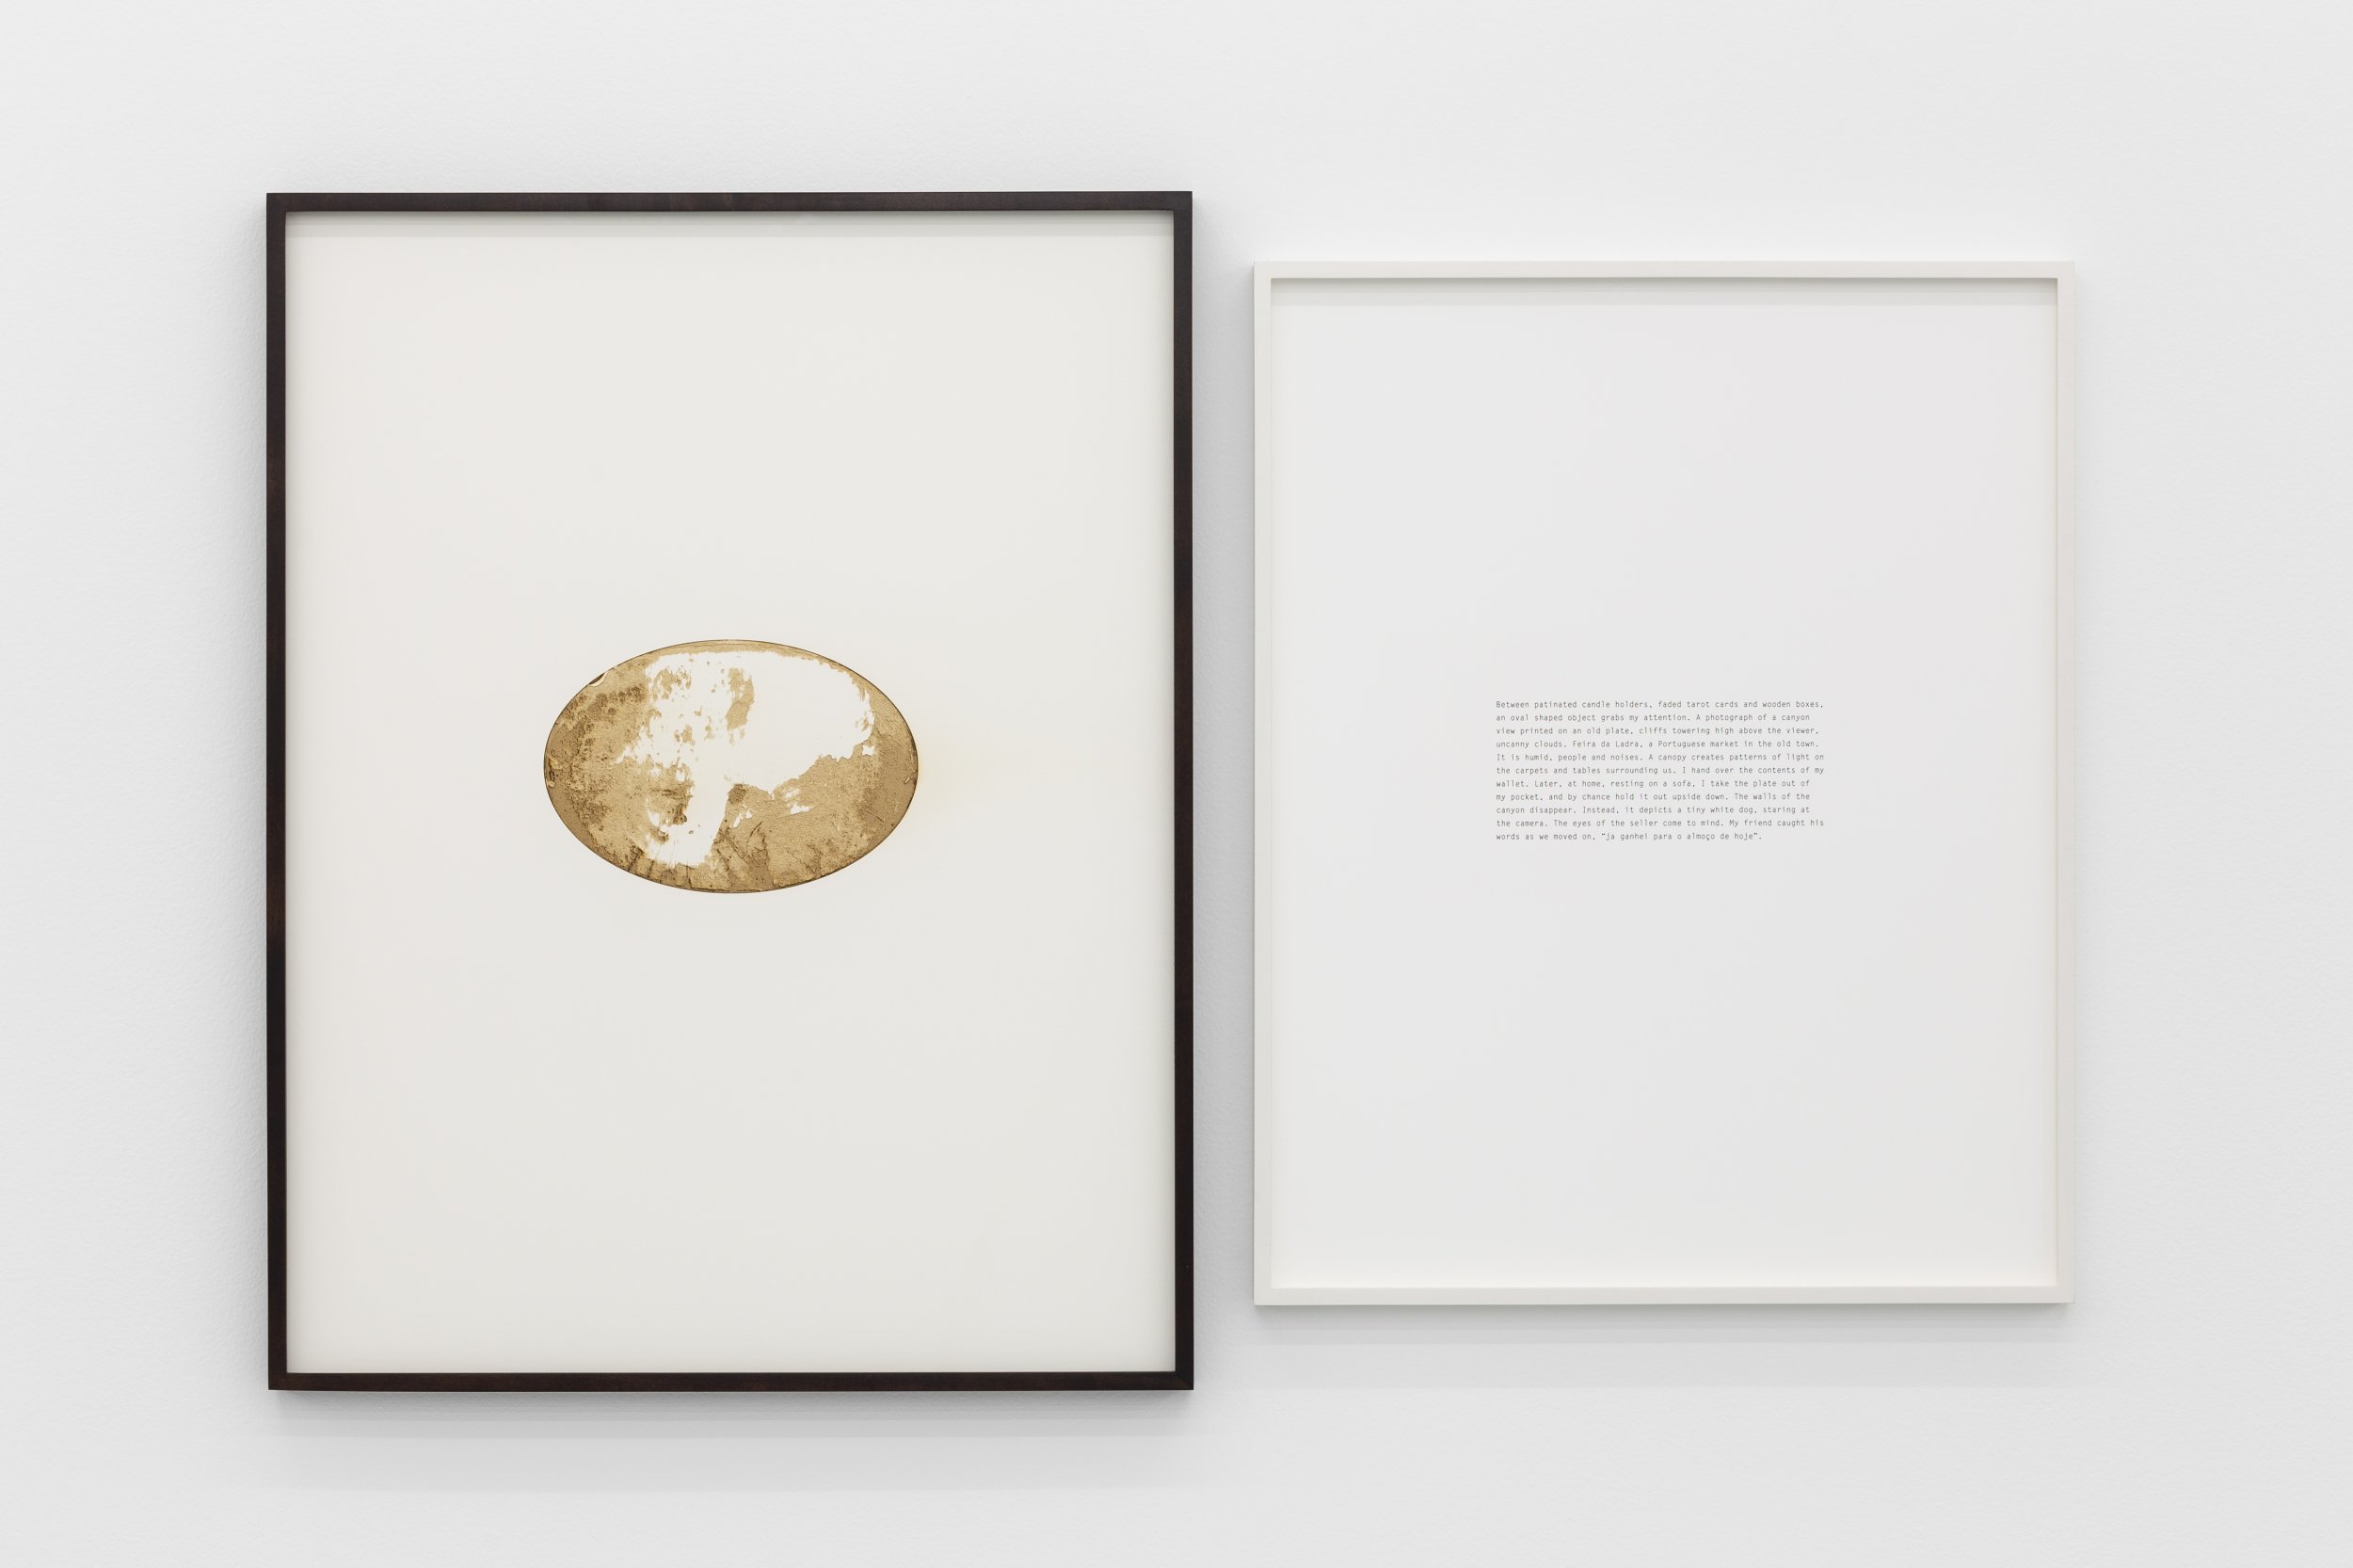 Daniel Gustav Cramer, Feira da Ladra, 2021. Laser burnt image, text. 70.3 × 105.5 cm
